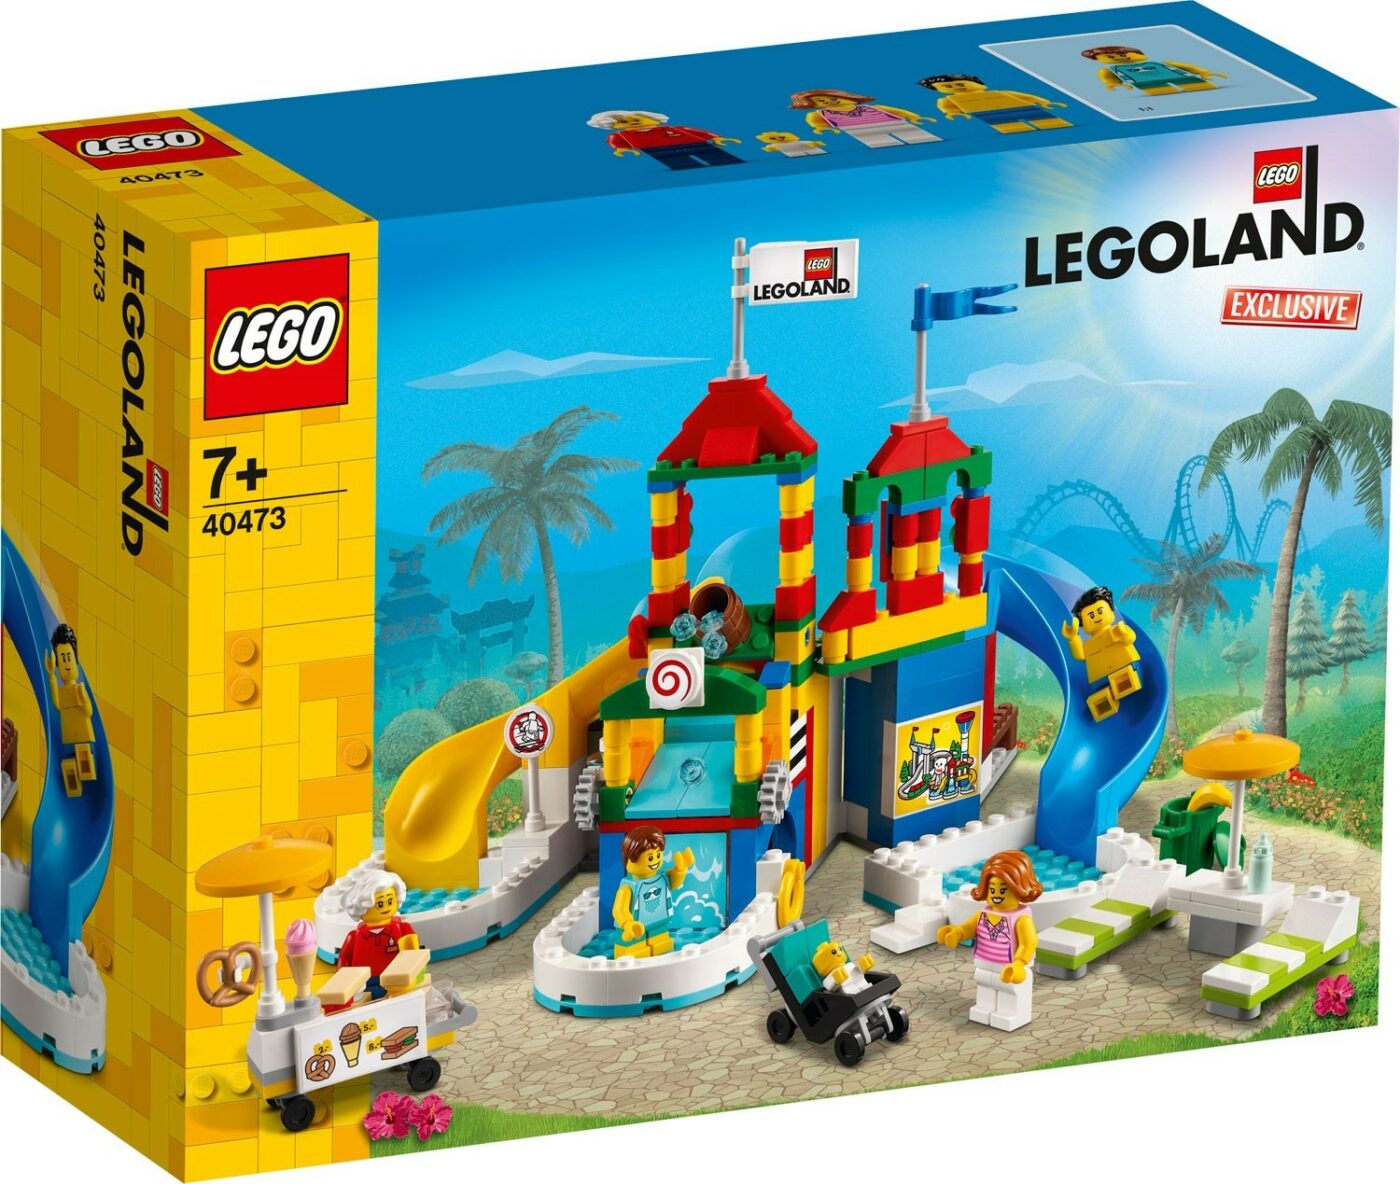 New LEGOLAND-exclusive 40710 Legoland Pirate Splash Battle revealed!9